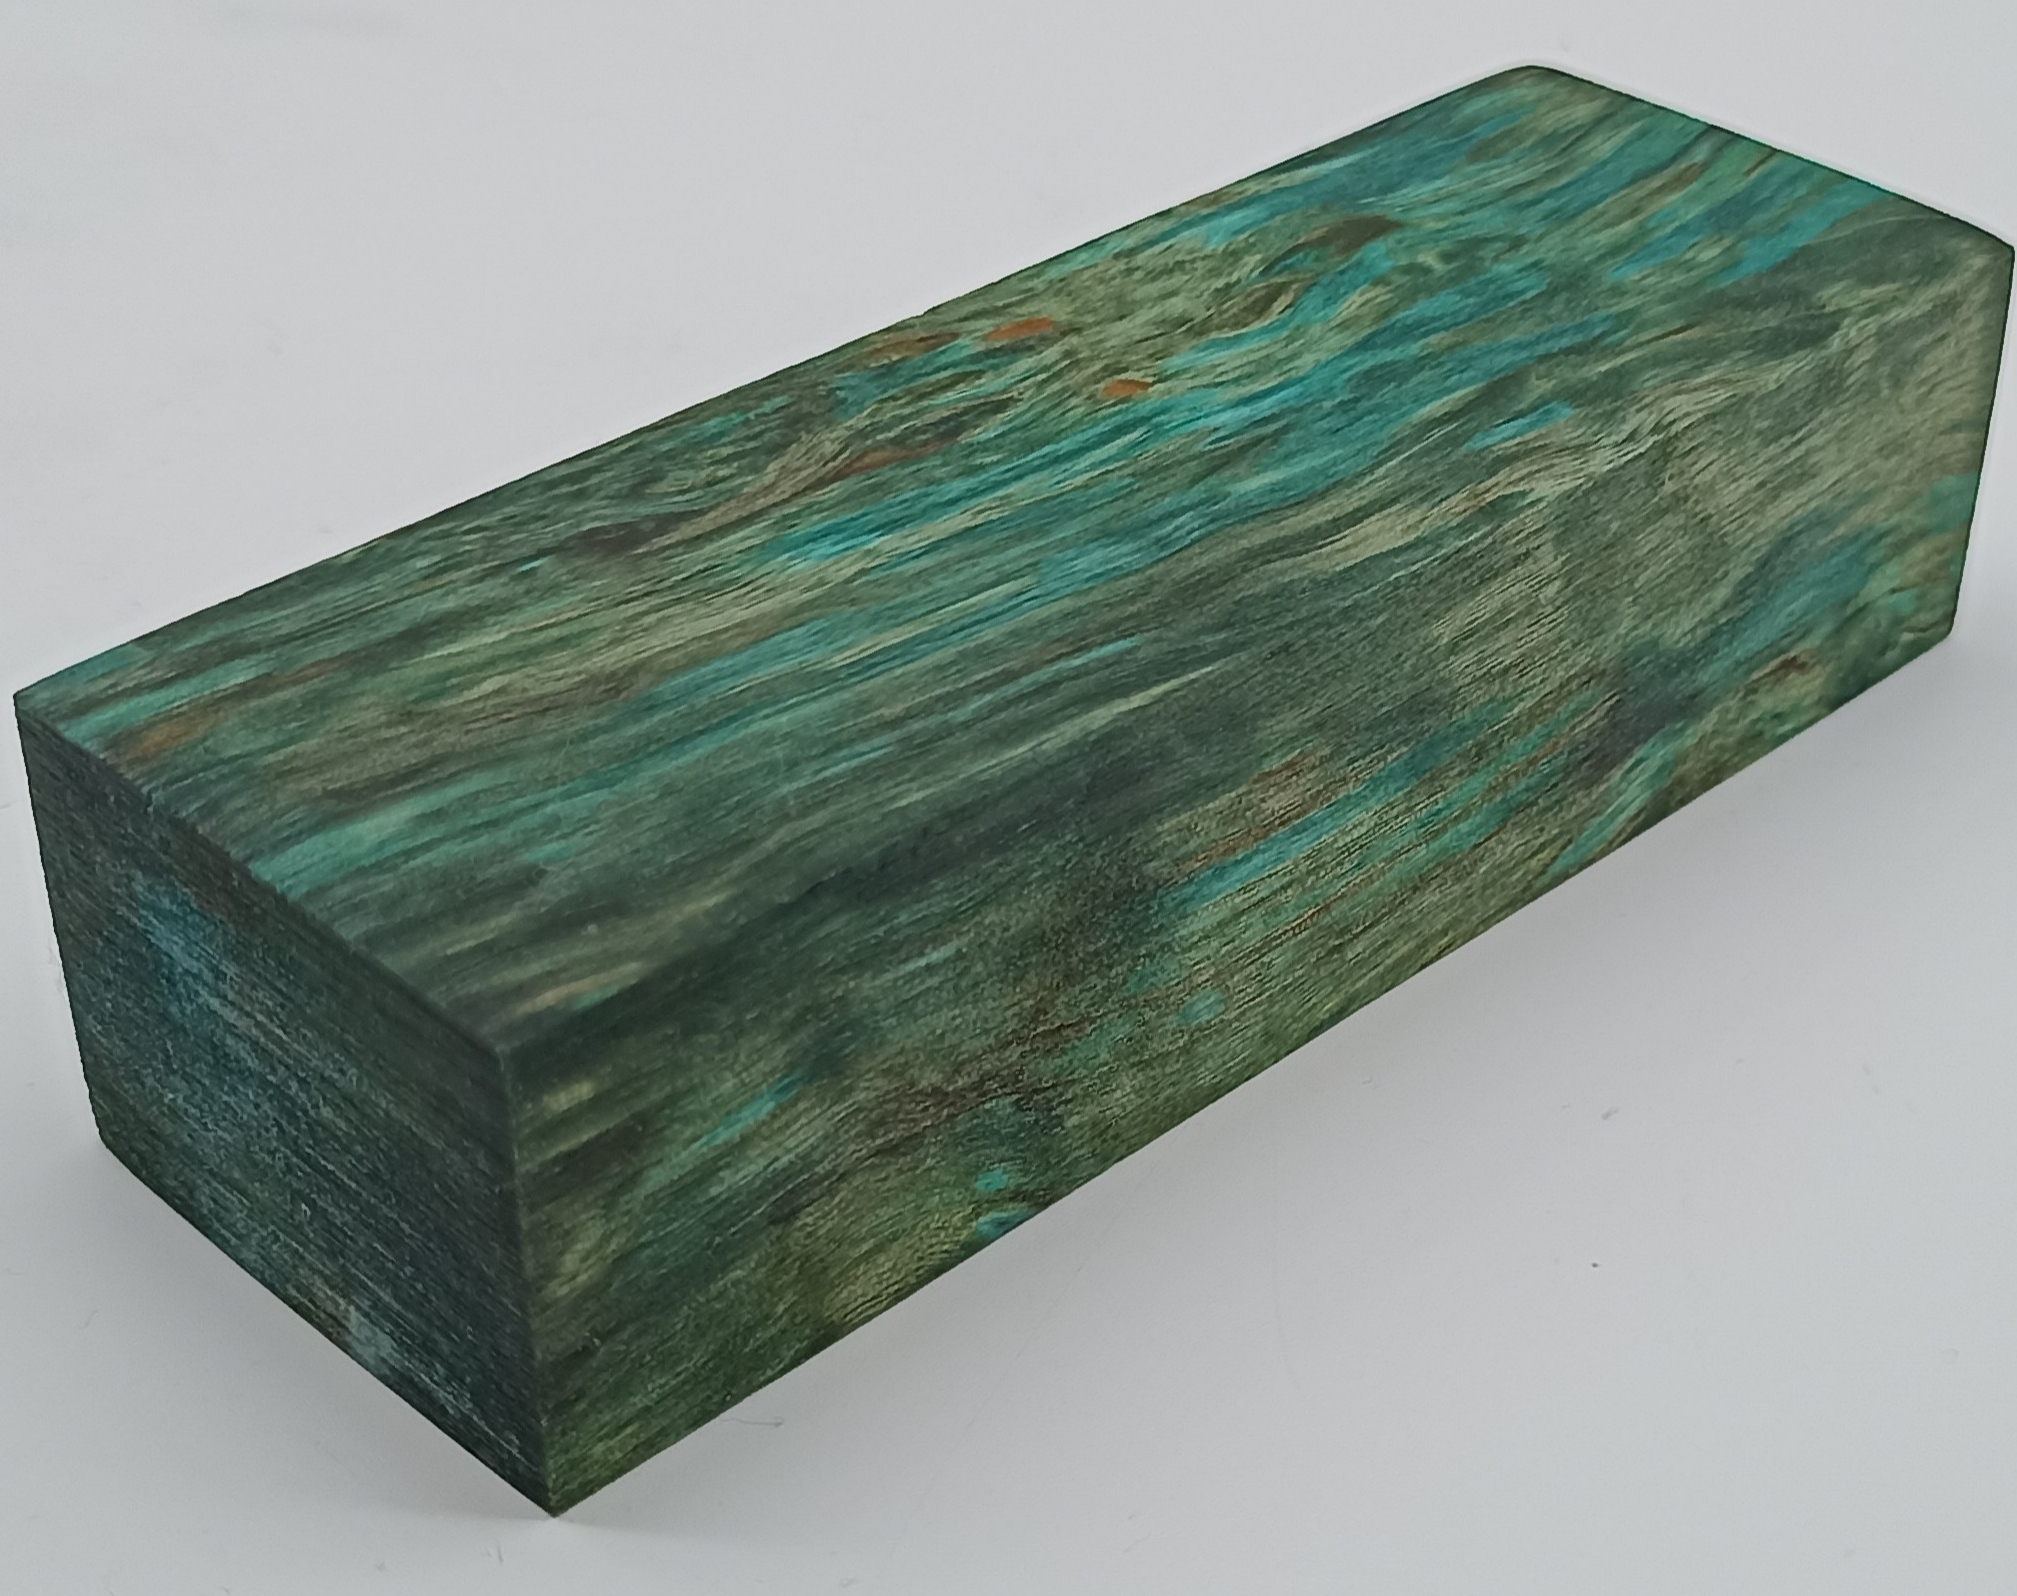 Stabilizované dřevo -  131 x 43 x 31 mm Karelská bříza